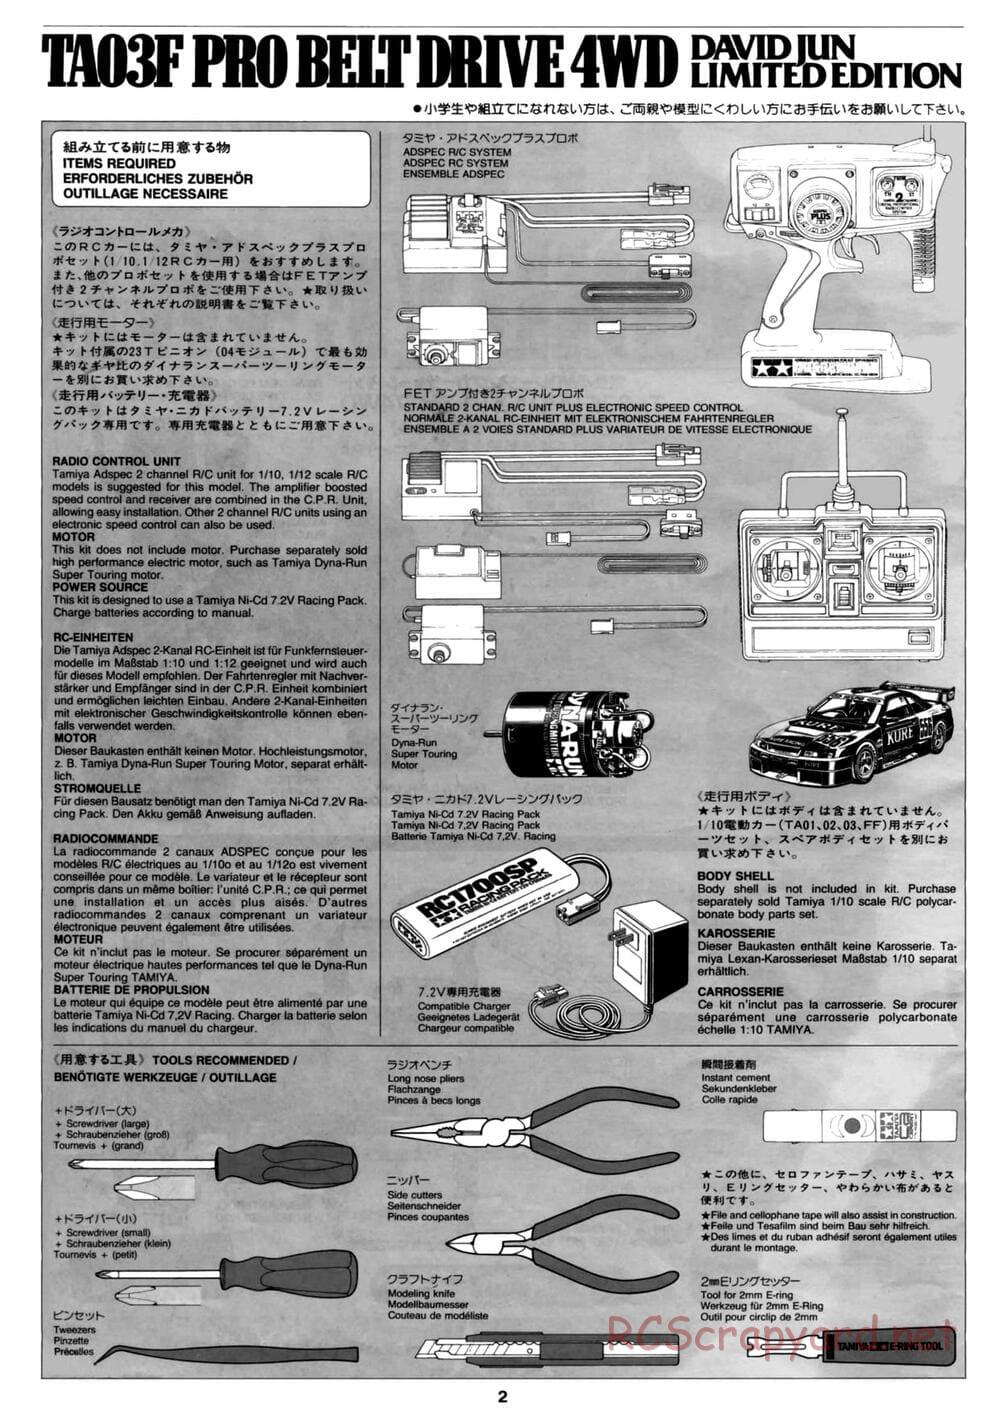 Tamiya - David Jun TA03F Pro Chassis - Manual - Page 2